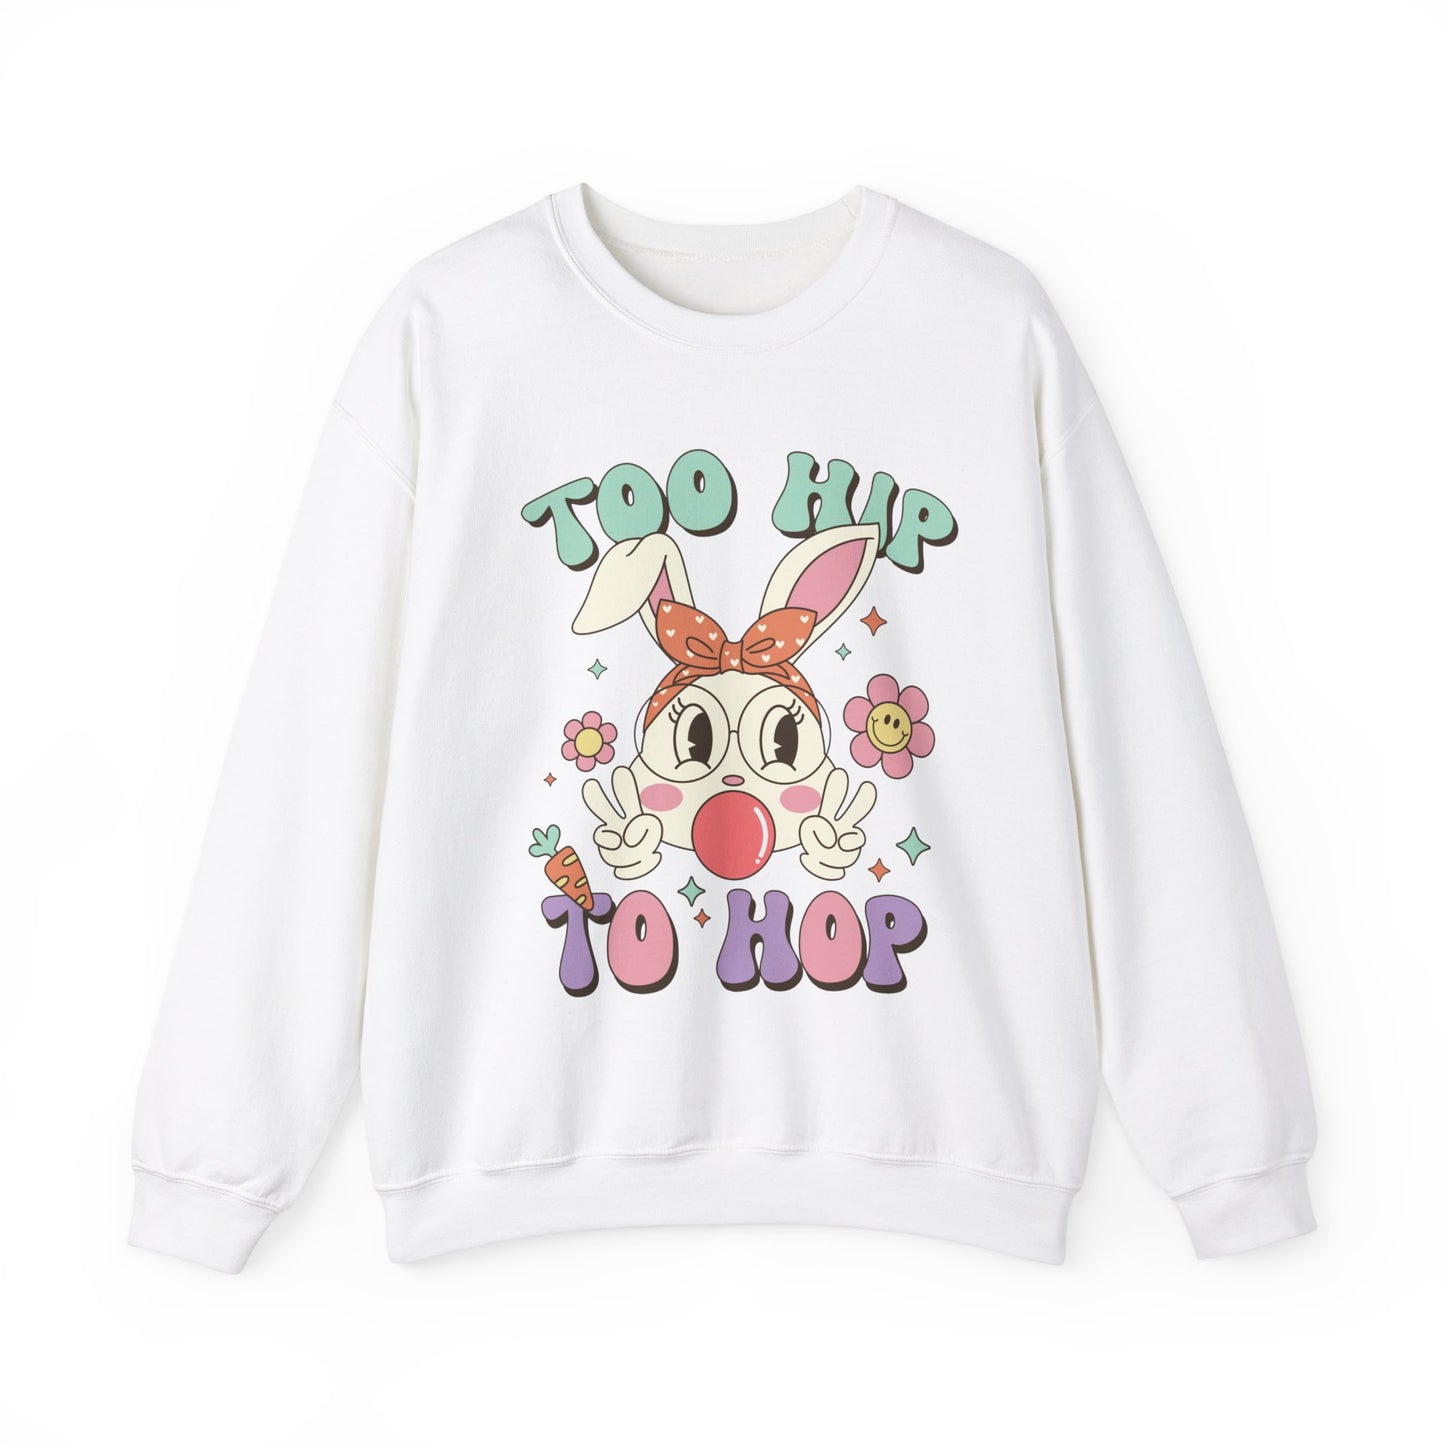 Too Hip To Hop Funny Women's Easter Sweatshirt